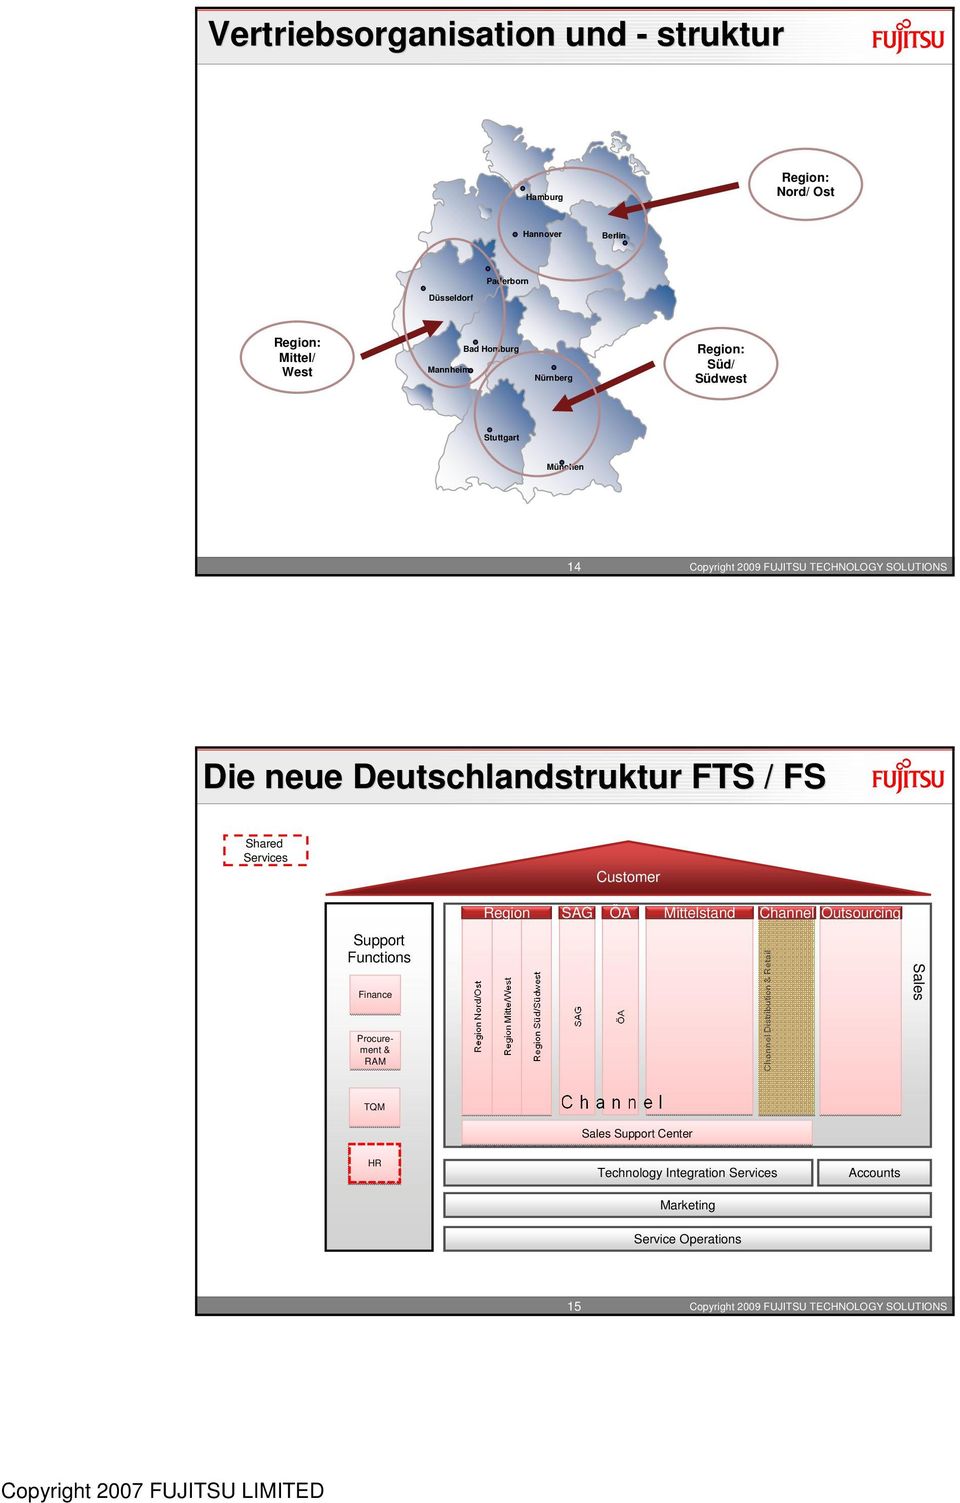 Deutschlandstruktur FTS / FS Shared Services Customer Support Functions Finance Region SAG ÖA Mittelstand